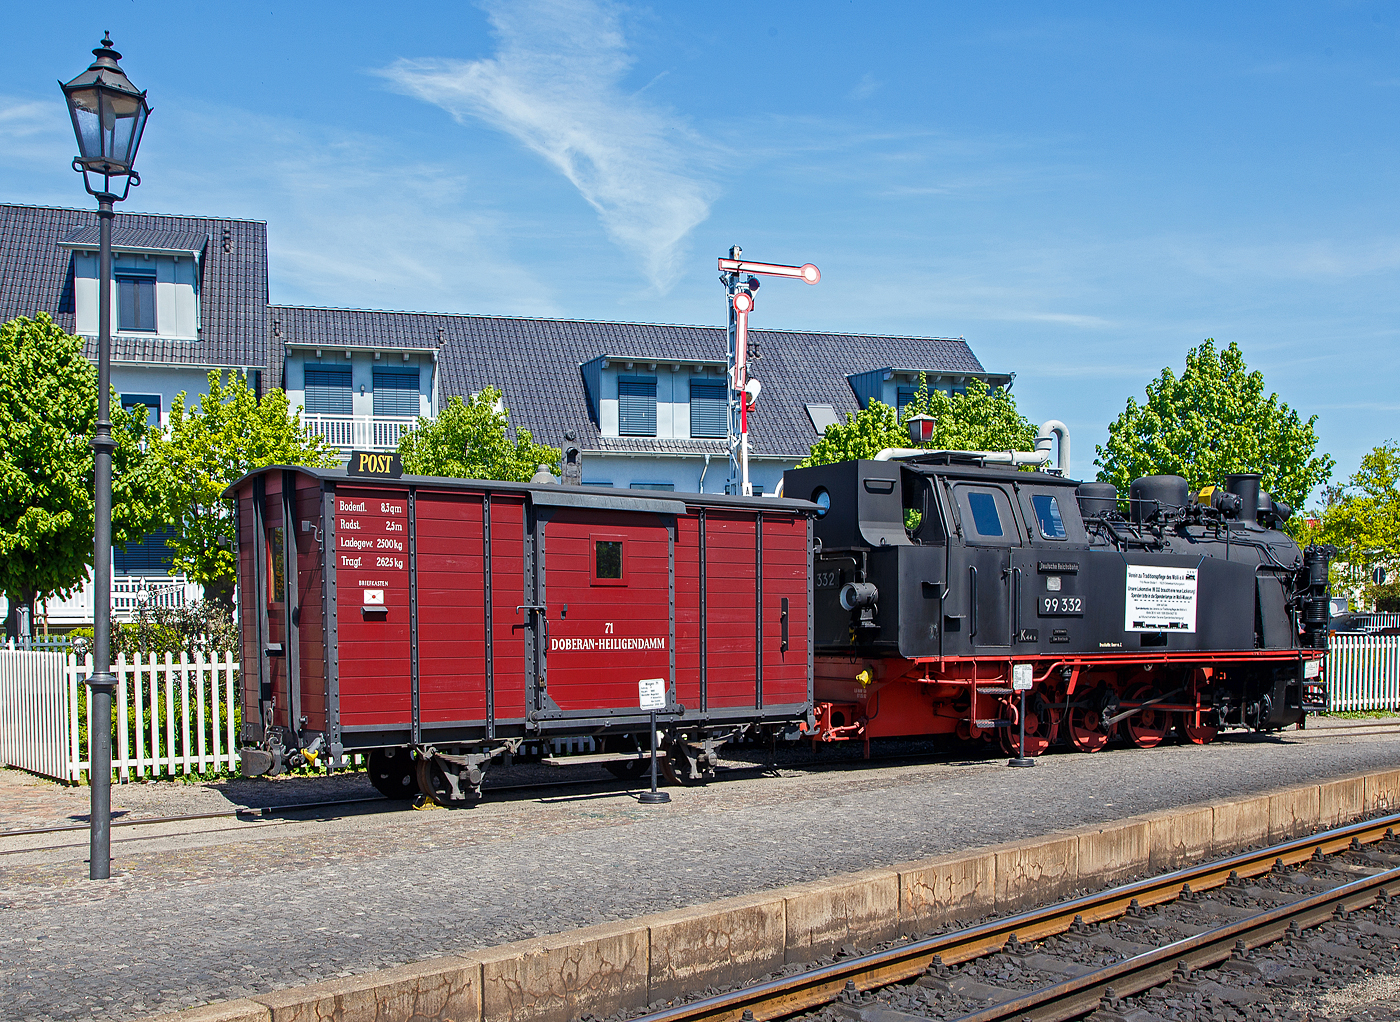 Der historische zweiachsige Postwagen 71 der damaligen DHE - Doberan-Heiligendammer-Eisenbahn (Vorgänger MBB - Mecklenburgischen Bäderbahn Molli), ex DR 98-84-01 ab-/ausgestellt im Bahnhof Ostseebad Kühlungsborn-West (bis 1938 Ostseebad Arendsee), hier am 15.05.2022. Der Wagen ist Eigentum und Leihgabe vom VTM.

Der Post-/ Packwagen wurde 1886 von der Waggonfabrik P. Herbrand & Cie. in Köln-Ehrenfeld gebaut und an die damalige Doberan-Heiligendammer-Eisenbahn (DHE) geliefert. Eine Rekonstruktion erfolgte 2000 – 2001 durch den Verein zur Traditionspflege des Molli e. V..

Die DHE wurde im März 1890 verstaatlichte und in die Großherzoglich Mecklenburgische Friedrich-Franz-Eisenbahn eingliedert. Ab dem 1. April 1920 gehörte sie zur Deutschen Reichsbahn. So kam der Molli nach der deutschen Wiedervereinigung zur DB AG. Zum 01.10.1995 wurde die Mecklenburgische Bäderbahn Molli GmbH gegründet und übernahm fortan die 15,4 km lange Strecke zwischen Kühlungsborn und Bad Doberan von der Deutschen Bahn AG.

TECHNISCH DATEN des Wagens:
Spurweite: 900 mm
Gattung: P
Anzahl der Achsen: 2
Drehzapfenabstand: 2.500 mm
Ladefläche: 8,3 m²
Tragfähigkeit: 2.625 kg

Rechts davor die Molli Museums-/Denkmaldampflok MBB 99 332, eine LKM Typ 225 PS, 900 mm Schmalspurlok, der Mecklenburgischen Bäderbahn Molli GmbH, ex DB 099 905, ex DR 99 2332, ex DR 99 332, ex Wismut 44, am 15.05.2022 beim Bahnhof Ostseebad Kühlungsborn West.

Die 900 mm-Schmalspur-Dampflok der DR-Baureihe 99.33 wurde1951 von LKM (VEB Lokomotivbau Karl Marx Babelsberg) unter der Fabriknummer 30013 gebaut und an die SDAG Wismut (Sowjetisch-Deutsche Aktiengesellschaft Wismut), für die Haldenbahn Oberschlema, (Aue) als Wismut 44 geliefert. Neben zwei weiteren Loks, wurde diese Lokomotive 1958 durch die Deutsche Reichsbahn, für die Bäderbahn Molli, erworben und nach Anpassungsarbeiten im Reichsbahnausbesserungswerk Görlitz als DR 99 332 in Dienst gestellt. Im Jahr 1961 wurden die 99 331 und die 99 332, im RAW Görlitz, auf Heißdampf umgebaut. Die 99 333 blieb eine Nassdampflokomotive und war ab Mitte der 1960er Jahre nur noch Reservemaschine. Mit der Einstellung des Güterverkehrs auf der Strecke wurden nicht mehr so viele Lokomotiven benötigt, so dass diese 1968 ausgemustert wurde.

1970 erfolgte die Umzeichnung in DR 99 2332-7 und 1992 in DR 099 905-2. Nachdem Zusammenschluss beider Deutscher Bahnen zum 01.01.94 wurde sie zur DB 099 905-2. So ging sie zum 01.10.1995, mit der Übernahme des Betriebs auf der Strecke durch die Molli - Mecklenburgische Bäderbahn Molli GmbH, an diese über. Mit der Übernahme wurde auch ein neues Betriebskonzept eingeführt, das die Unterhaltung von zwei noch vorhandenen Lokomotiven der BR 99.33 nicht mehr notwendig machte, so erfolgte zum 07.05.1996 die Außerdienststellung.

Die Schmalspur-Dampf-Lokomotiven des Typs 225 PS Schmalspur des VEB Lokomotivbau Karl Marx wurden basierend auf einem Typenprogramm für kleinere Dampflokomotiven speziell für den Einsatz bei Industriebetrieben entwickelt. Drei dieser Lokomotiven wurden 1958 durch die Deutsche Reichsbahn von der SDAG Wismut erworben. 

Konstruktive Merkmale:
Die Lokomotiven verfügen über einen geschweißten Blechrahmen. Auf dem geschweißten Langkessel sitzt vorn der Dampfdom. Auf dem hinteren Teil sitzen der Sandkasten sowie zwei Kesselsicherheitsventile der Bauart Ackermann. 1961 wurden die 99 331 und die 99 332 auf Heißdampf umgebaut. Dabei erhielten die Kessel jeweils 9 Heiz- und 64 Rauchrohre. Das außen liegende waagerecht angeordnete Zweizylinder-Triebwerk wirkt auf die dritte Kuppelachse. Die außen liegende Heusinger-Steuerung besitzt eine stark vereinfachte Kuhnsche Schleife.

Für die Zugbeleuchtung erhielten die Lokomotiven bei den Anpassungsarbeiten der Deutschen Reichsbahn einen leistungsstärkeren 5 kW Turbogenerator hinter dem Schornstein. Die ursprüngliche Handbremse wurde um eine Knorr-Druckluftbremse ergänzt. Die zweistufige Luftpumpe sitzt rechts neben der Rauchkammer. Die Lokomotiven erhielten wie auf der Bäderbahn üblich ein Knorr-Druckluftläutewerk. Gesandet werden der erste Radsatz von vorn und der letzte Radsatz von hinten.

Für den Einsatz auf der Bäderbahn wurde der obere Teil des Führerhauses stark abgeschrägt, um es an das Lichtraumprofil anzupassen. Das Dach erhielt seitliche Regenrinnen mit Ablaufrohren. Die geschweißten Wasserkästen befinden sich vor dem Führerhaus auf beiden Seiten des Kessels und fassen 3,4 m³. Der Kohlenkasten befindet sich an der Rückwand des Führerhauses und war ursprünglich, da für Braunkohlebrikettfeuerung ausgelegt, mit einem Aufbau vergrößert, der zwischen den beiden Fenstern der Rückwand eingezogen bis auf Höhe des Daches geführt wurde. Er hatte ein Fassungsvermögen von 2,2 t. Da mittlerweile die Feuerung mit Steinkohle erfolgt und bei deren höherem spezifischen Gewicht der Kohlekasten nicht voll gefüllt werden konnte, wurde dieser Aufbau bei 99 2331 bei der Hauptuntersuchung 2004 im Dampflokwerk Meiningen zur Verbesserung der Sicht bei Rückwärtsfahrt entfernt. Sein Fassungsvermögen reduzierte sich dadurch auf 1,5 t. Die, hier gezeigte Museumslok 99 2332 hat noch den ursprünglichen Aufbau.

TECHNISCHE DATEN:
Spurweite: 900 mm 
Achsformel: D h2t
Gattung:  K 44.8
Länge über Kupplung: 8.860 mm
Höhe: 3.490 mm
Achsabstand: 3 x 1.000 mm = 3.000 mm
Leergewicht: 25,0 t
Dienstgewicht: 32,4 t
Höchstgeschwindigkeit: 35 km/h
Indizierte Leistung: 460 PSi
Anfahrzugkraft: 56,39 kN
Kuppelraddurchmesser: 800 mm
Steuerungsart: Heusinger
Zylinderanzahl: 2
Zylinderdurchmesser: 370 mm
Kolbenhub: 400 mm
Kesselüberdruck: 14 bar
Anzahl der Heizrohre:  9
Anzahl der Rauchrohre: 64
Heizrohrlänge: 2.600 mm
Rostfläche: 1,6 m²
Strahlungsheizfläche:  6,04 m²
Rohrheizfläche:  36,85 m²
Strahlungsheizfläche:  6,04 m²
Rohrheizfläche: 36,85 m²
Überhitzerfläche: 18 m²
Verdampfungsheizfläche: 42,89 m²
Wasservorrat: 3,4 m³
Brennstoffvorrat: 2,2 t Kohle
